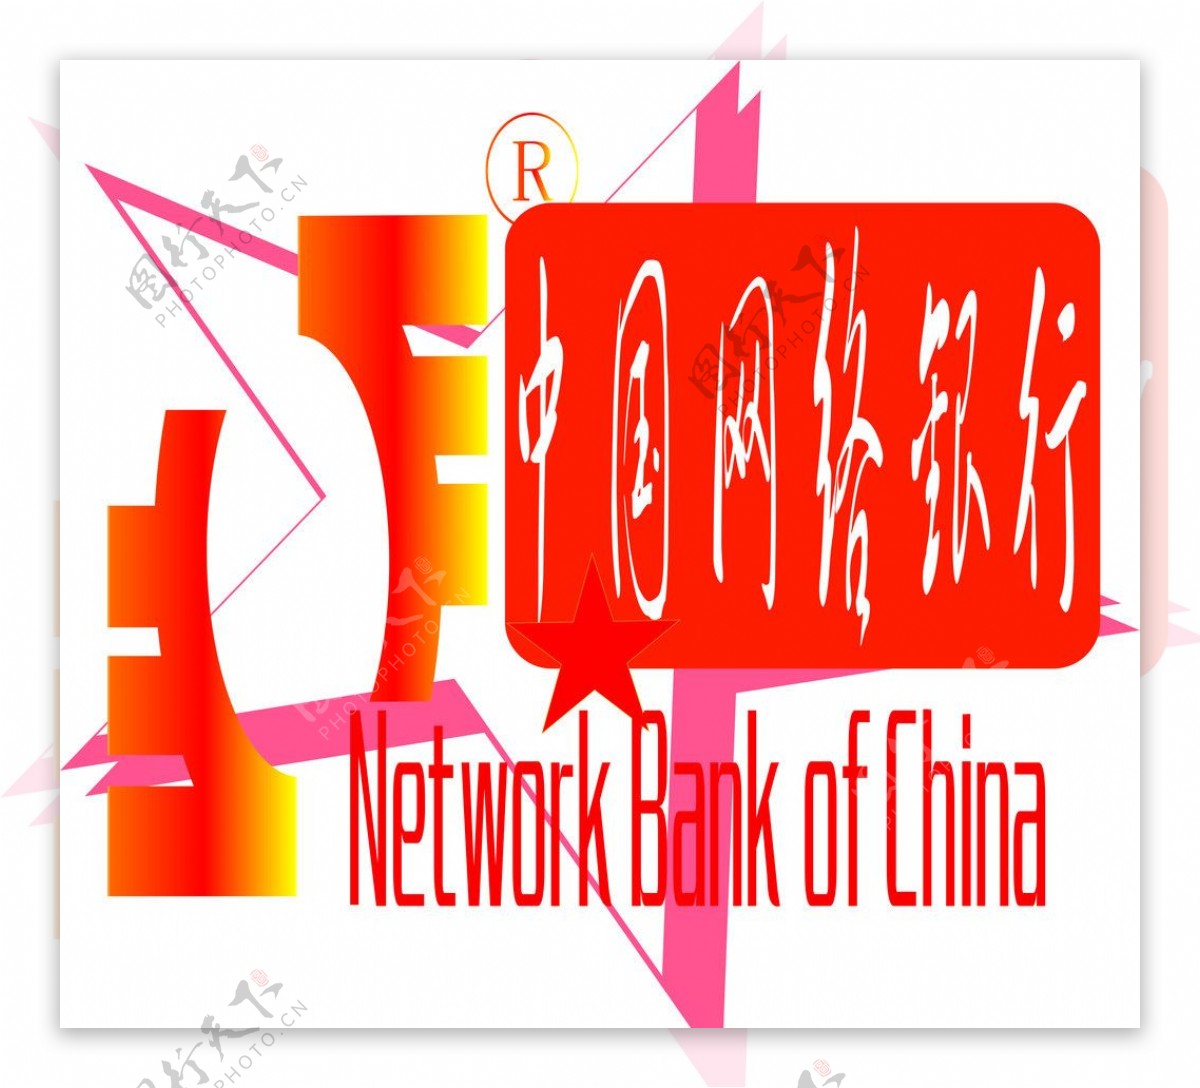 中国网络银行图片